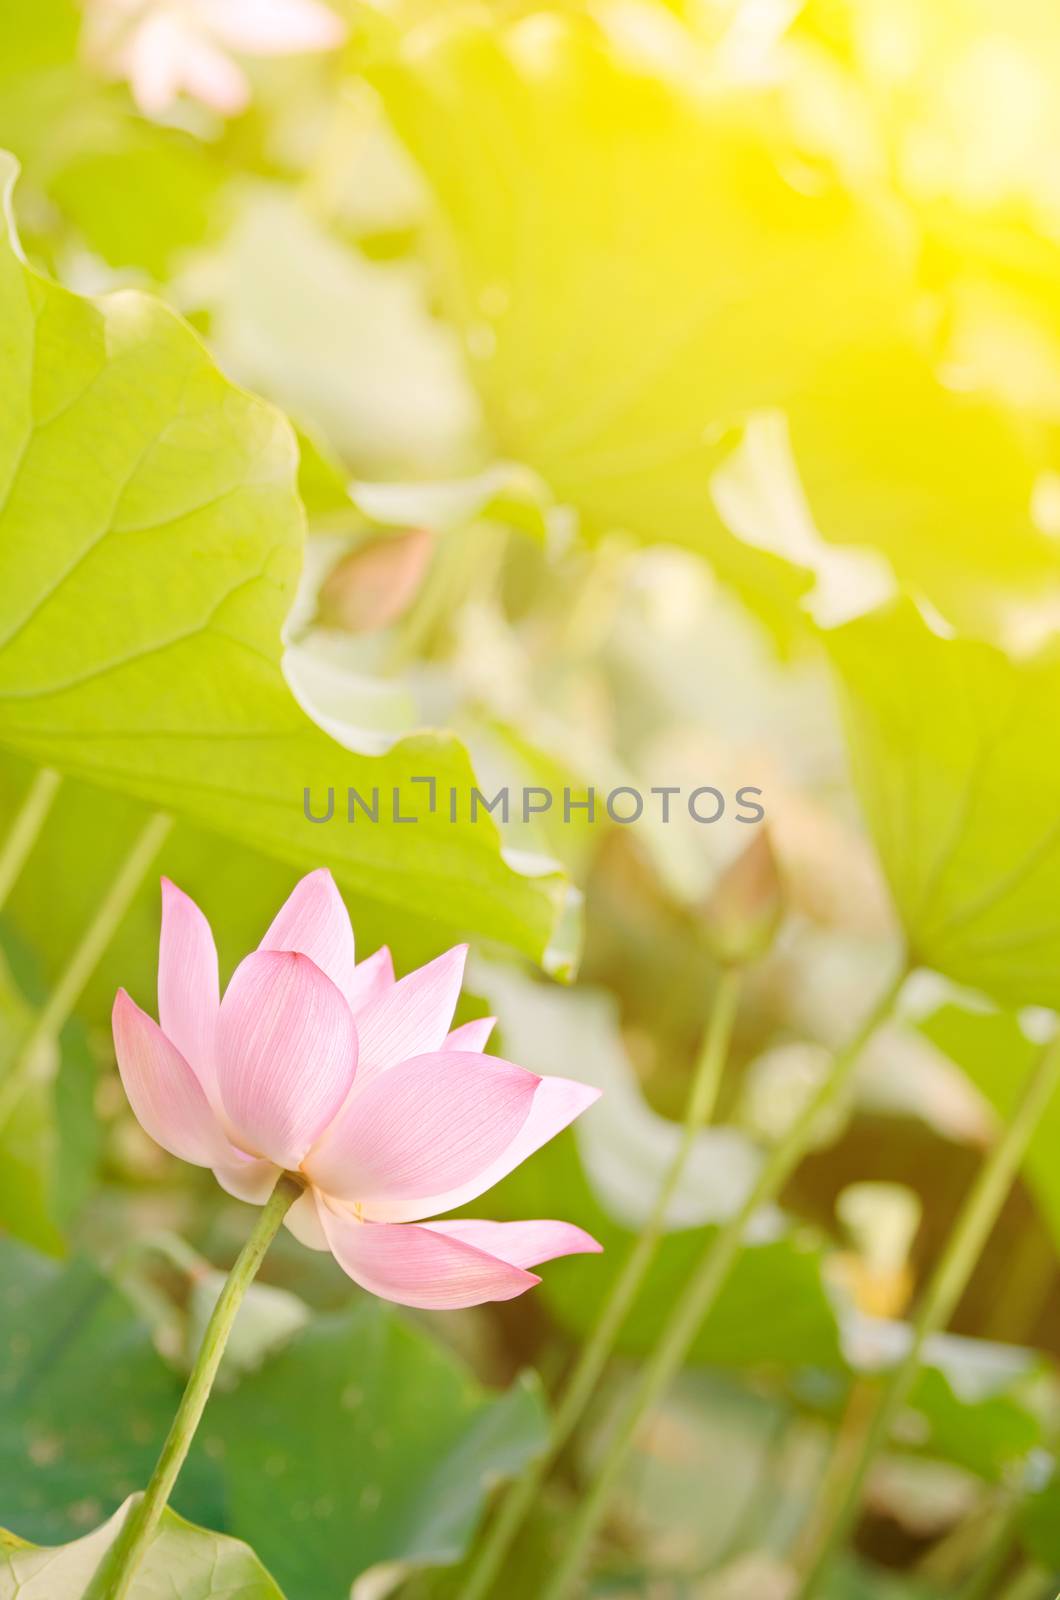 Morning lotus by elwynn